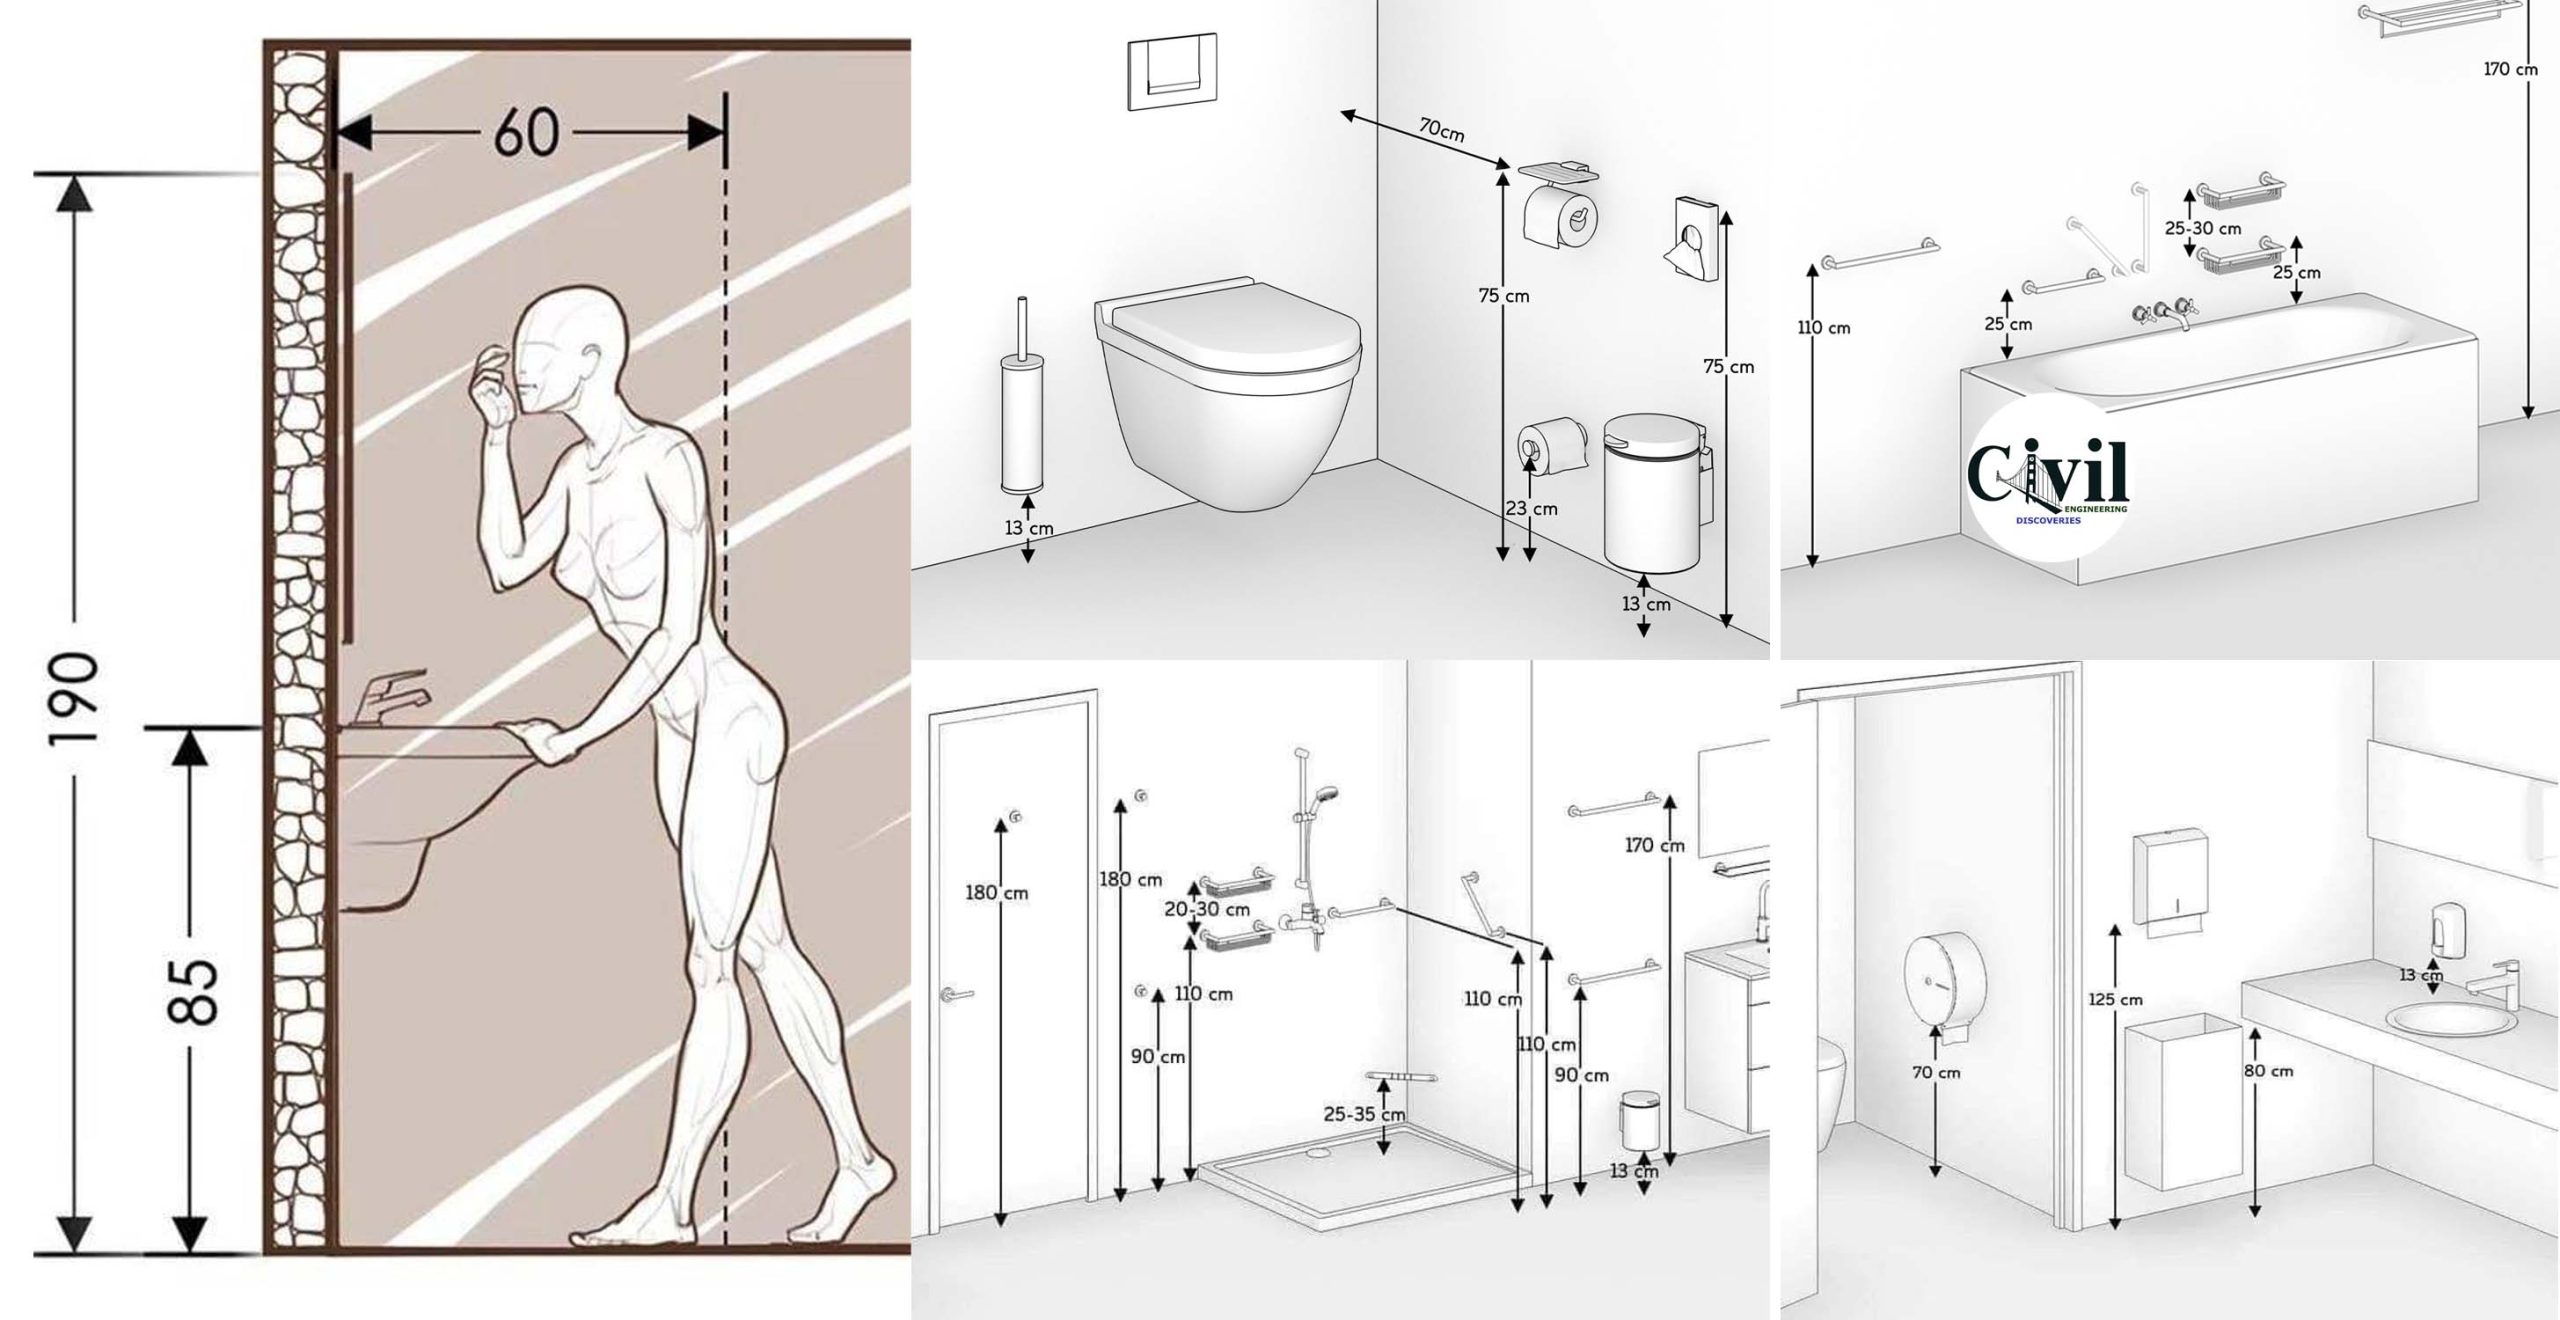 Высота установки раковины в ванной от пола: стандарт
высота установки раковины в ванной от пола: стандарт